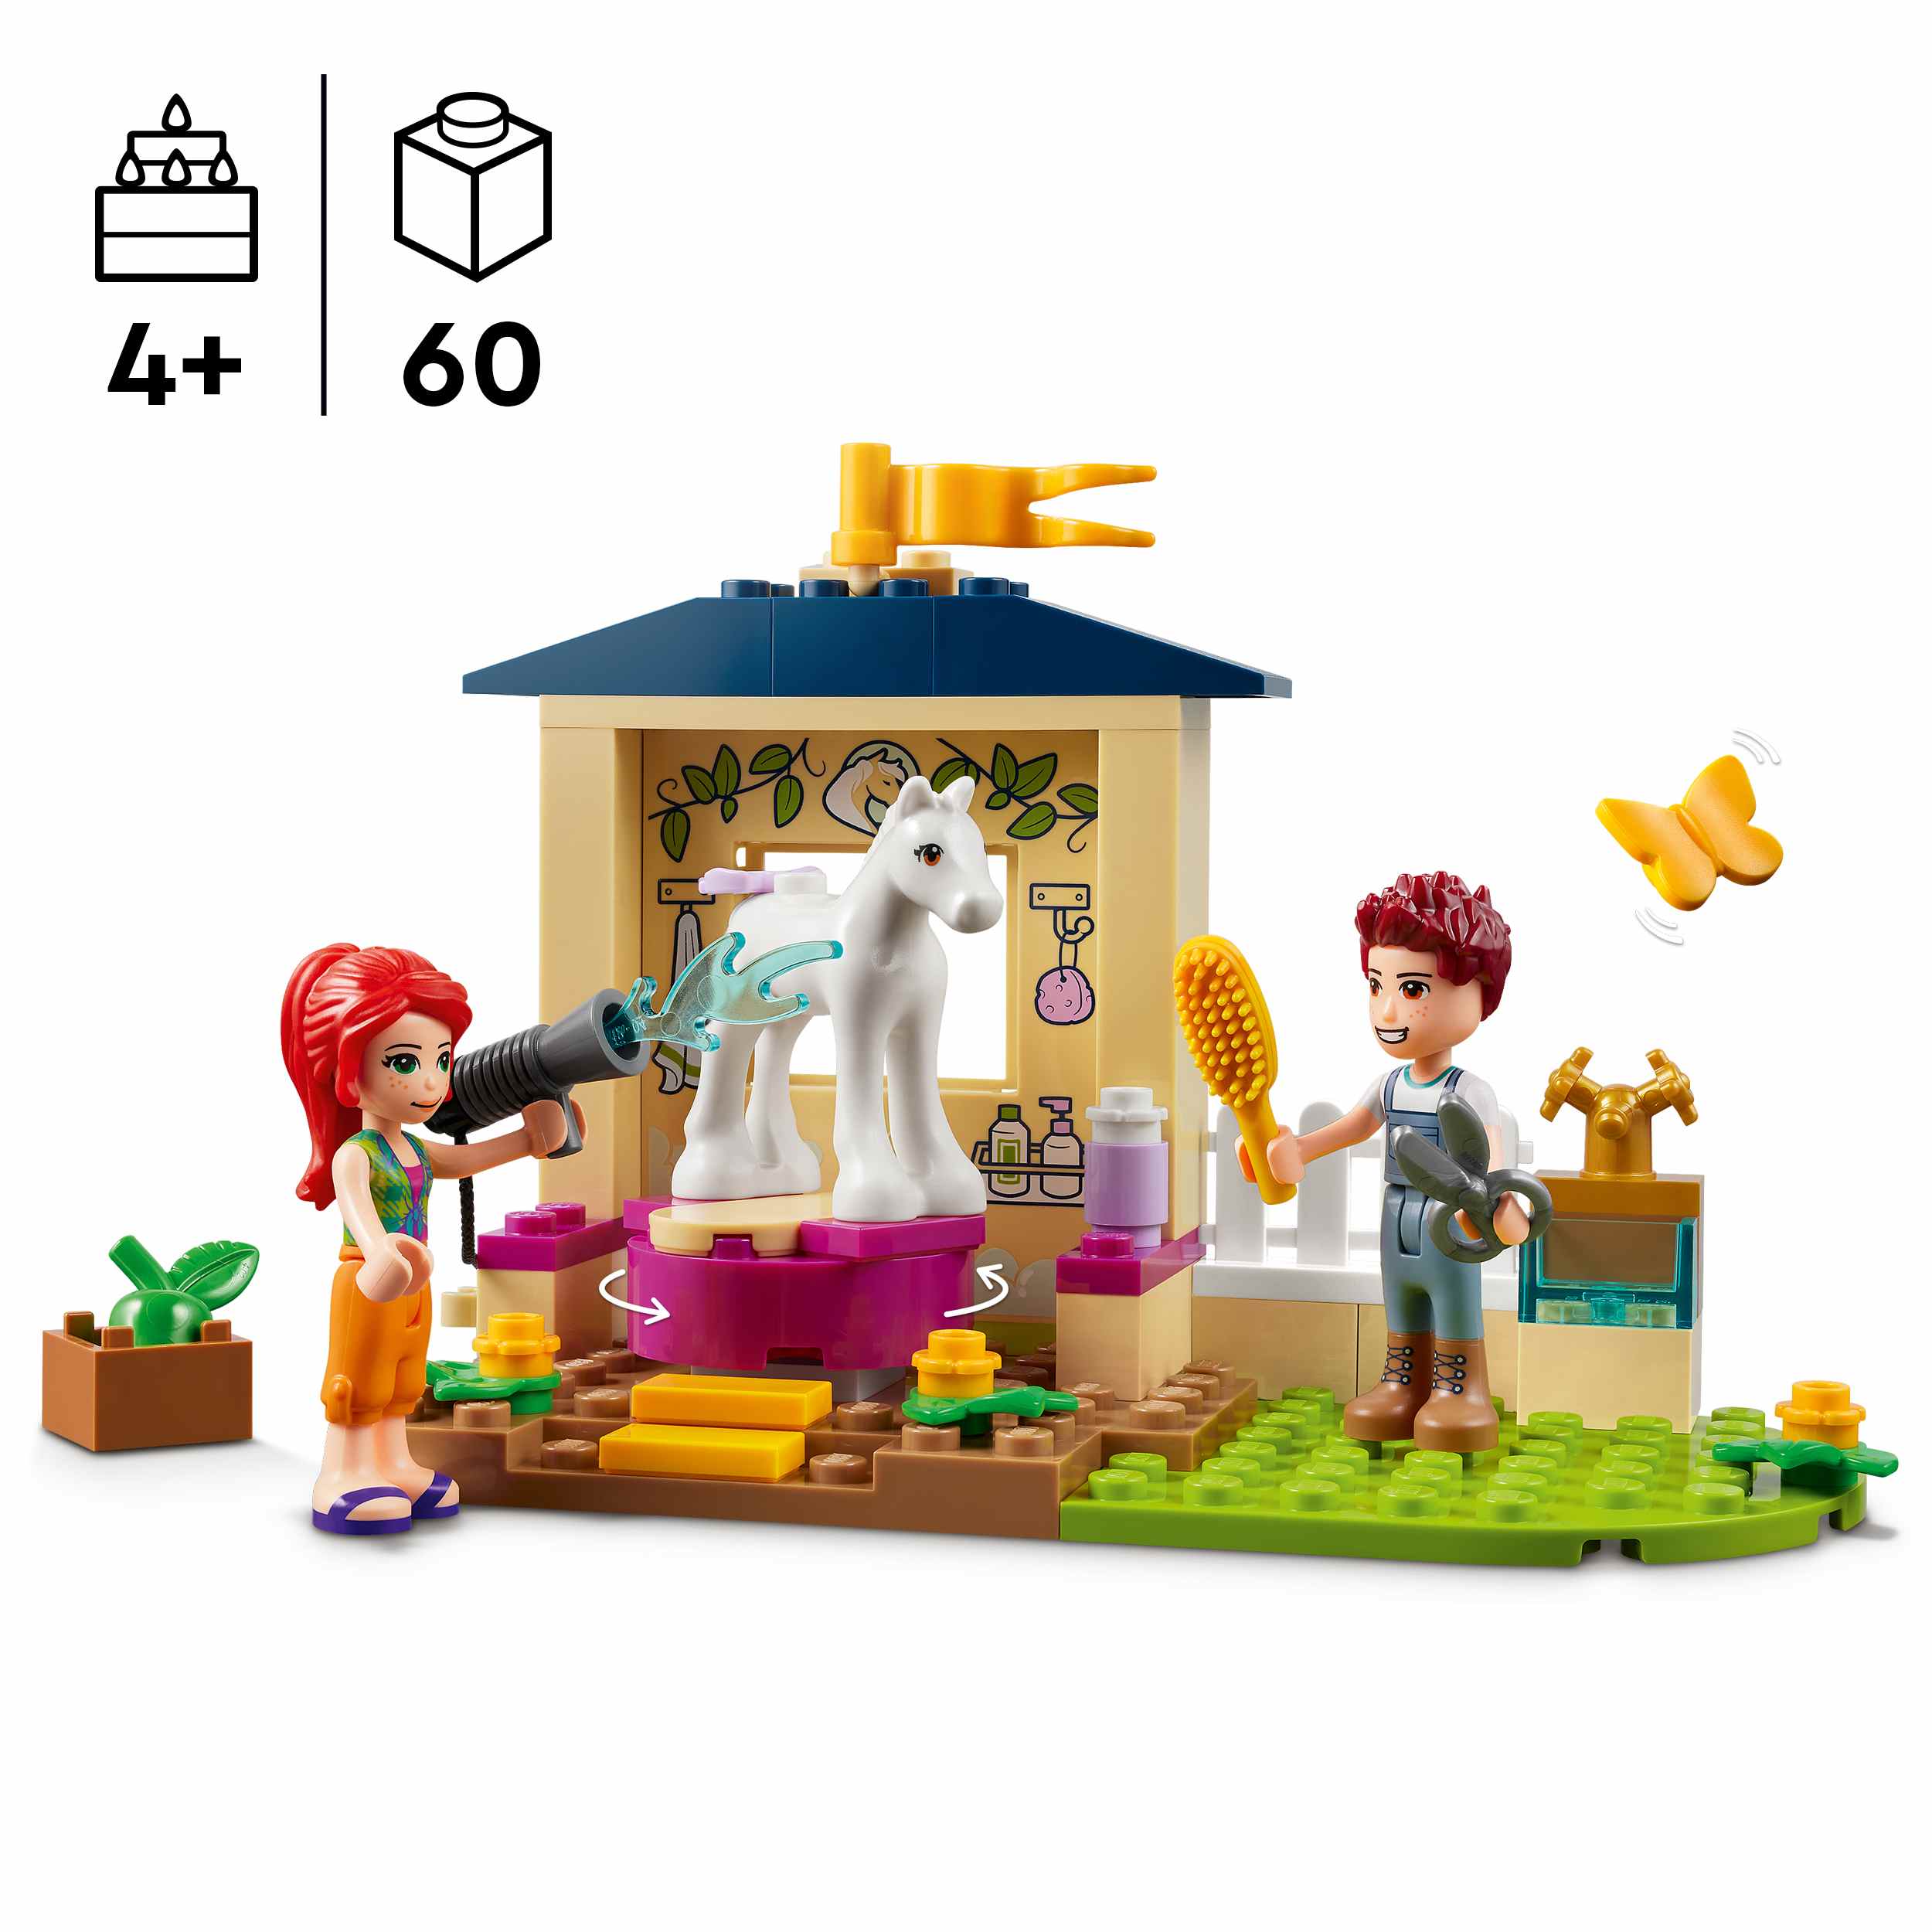 Lego friends 41696 stalla di toelettatura dei pony, con cavallo giocattolo e mini bamboline mia e daniel, giochi per bambini - LEGO FRIENDS, Lego